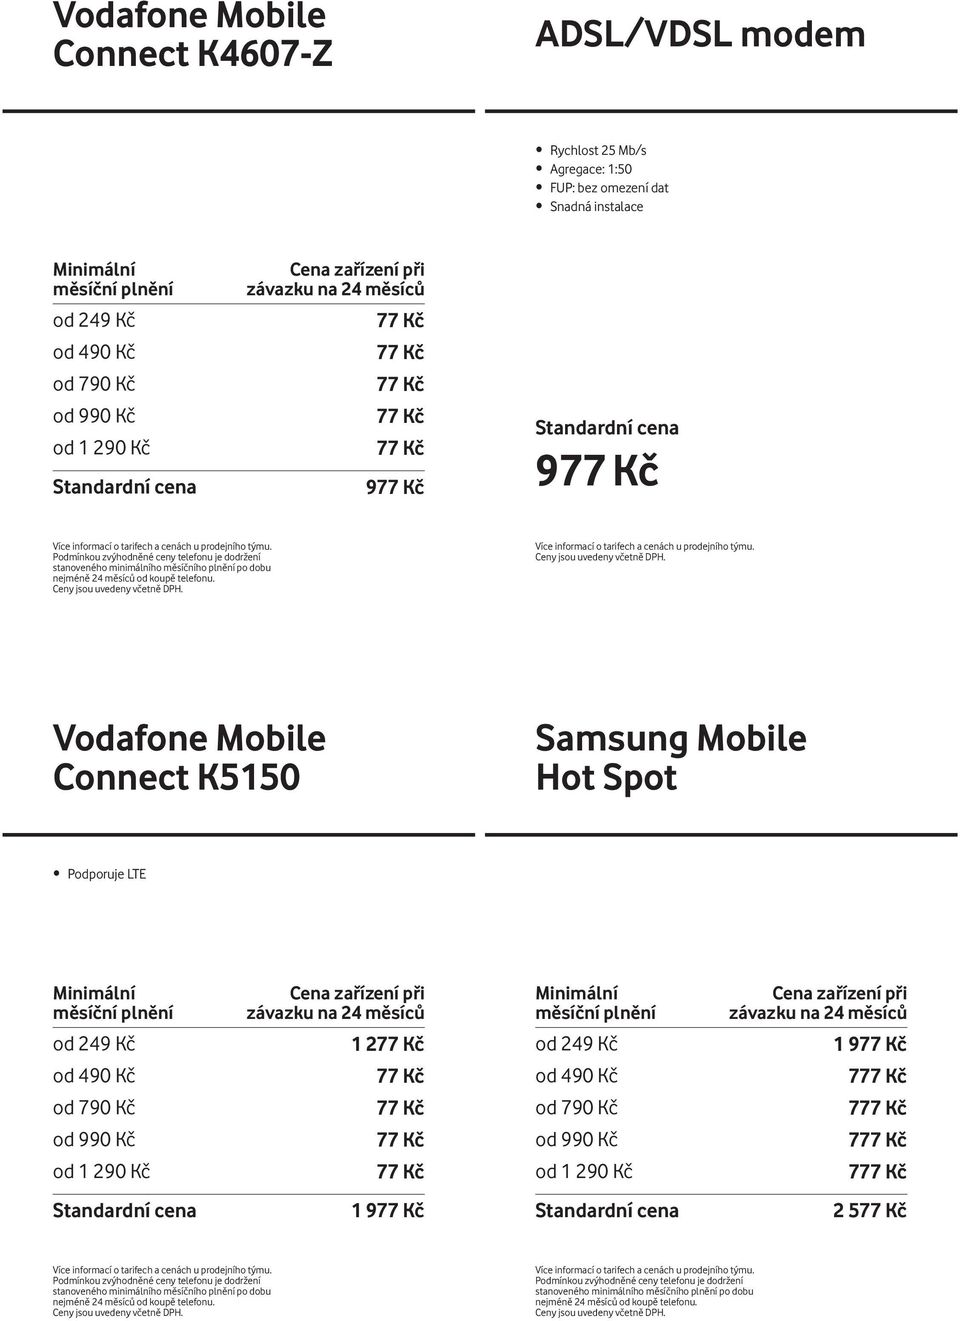 Vodafone Mobile Connect K5150 Samsung Mobile Hot Spot Podporuje LTE Minimální měsíční plnění Cena zařízení při závazku na 24 měsíců Minimální měsíční plnění Cena zařízení při závazku na 24 měsíců od